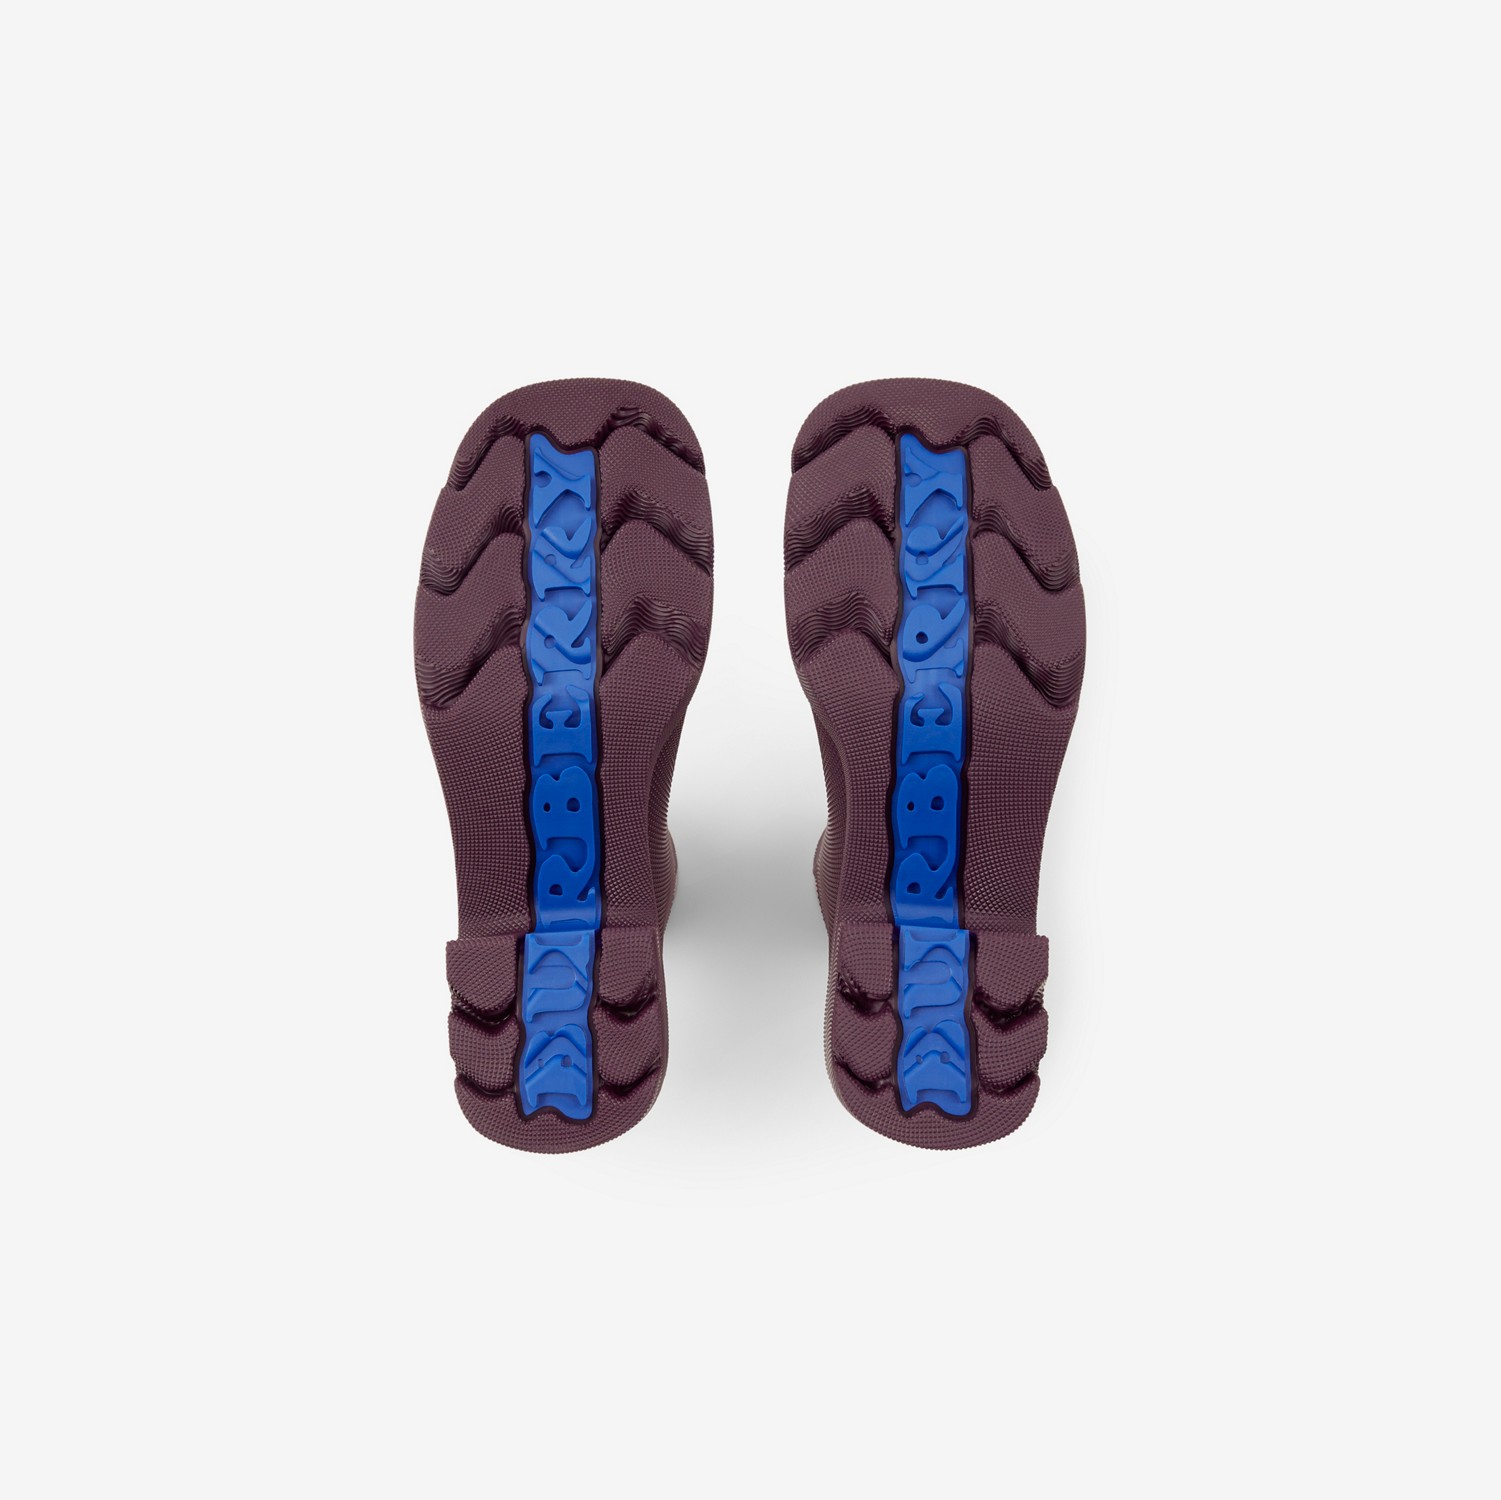 Rubber Marsh Heel Boots in Aubergine - Women | Burberry® Official